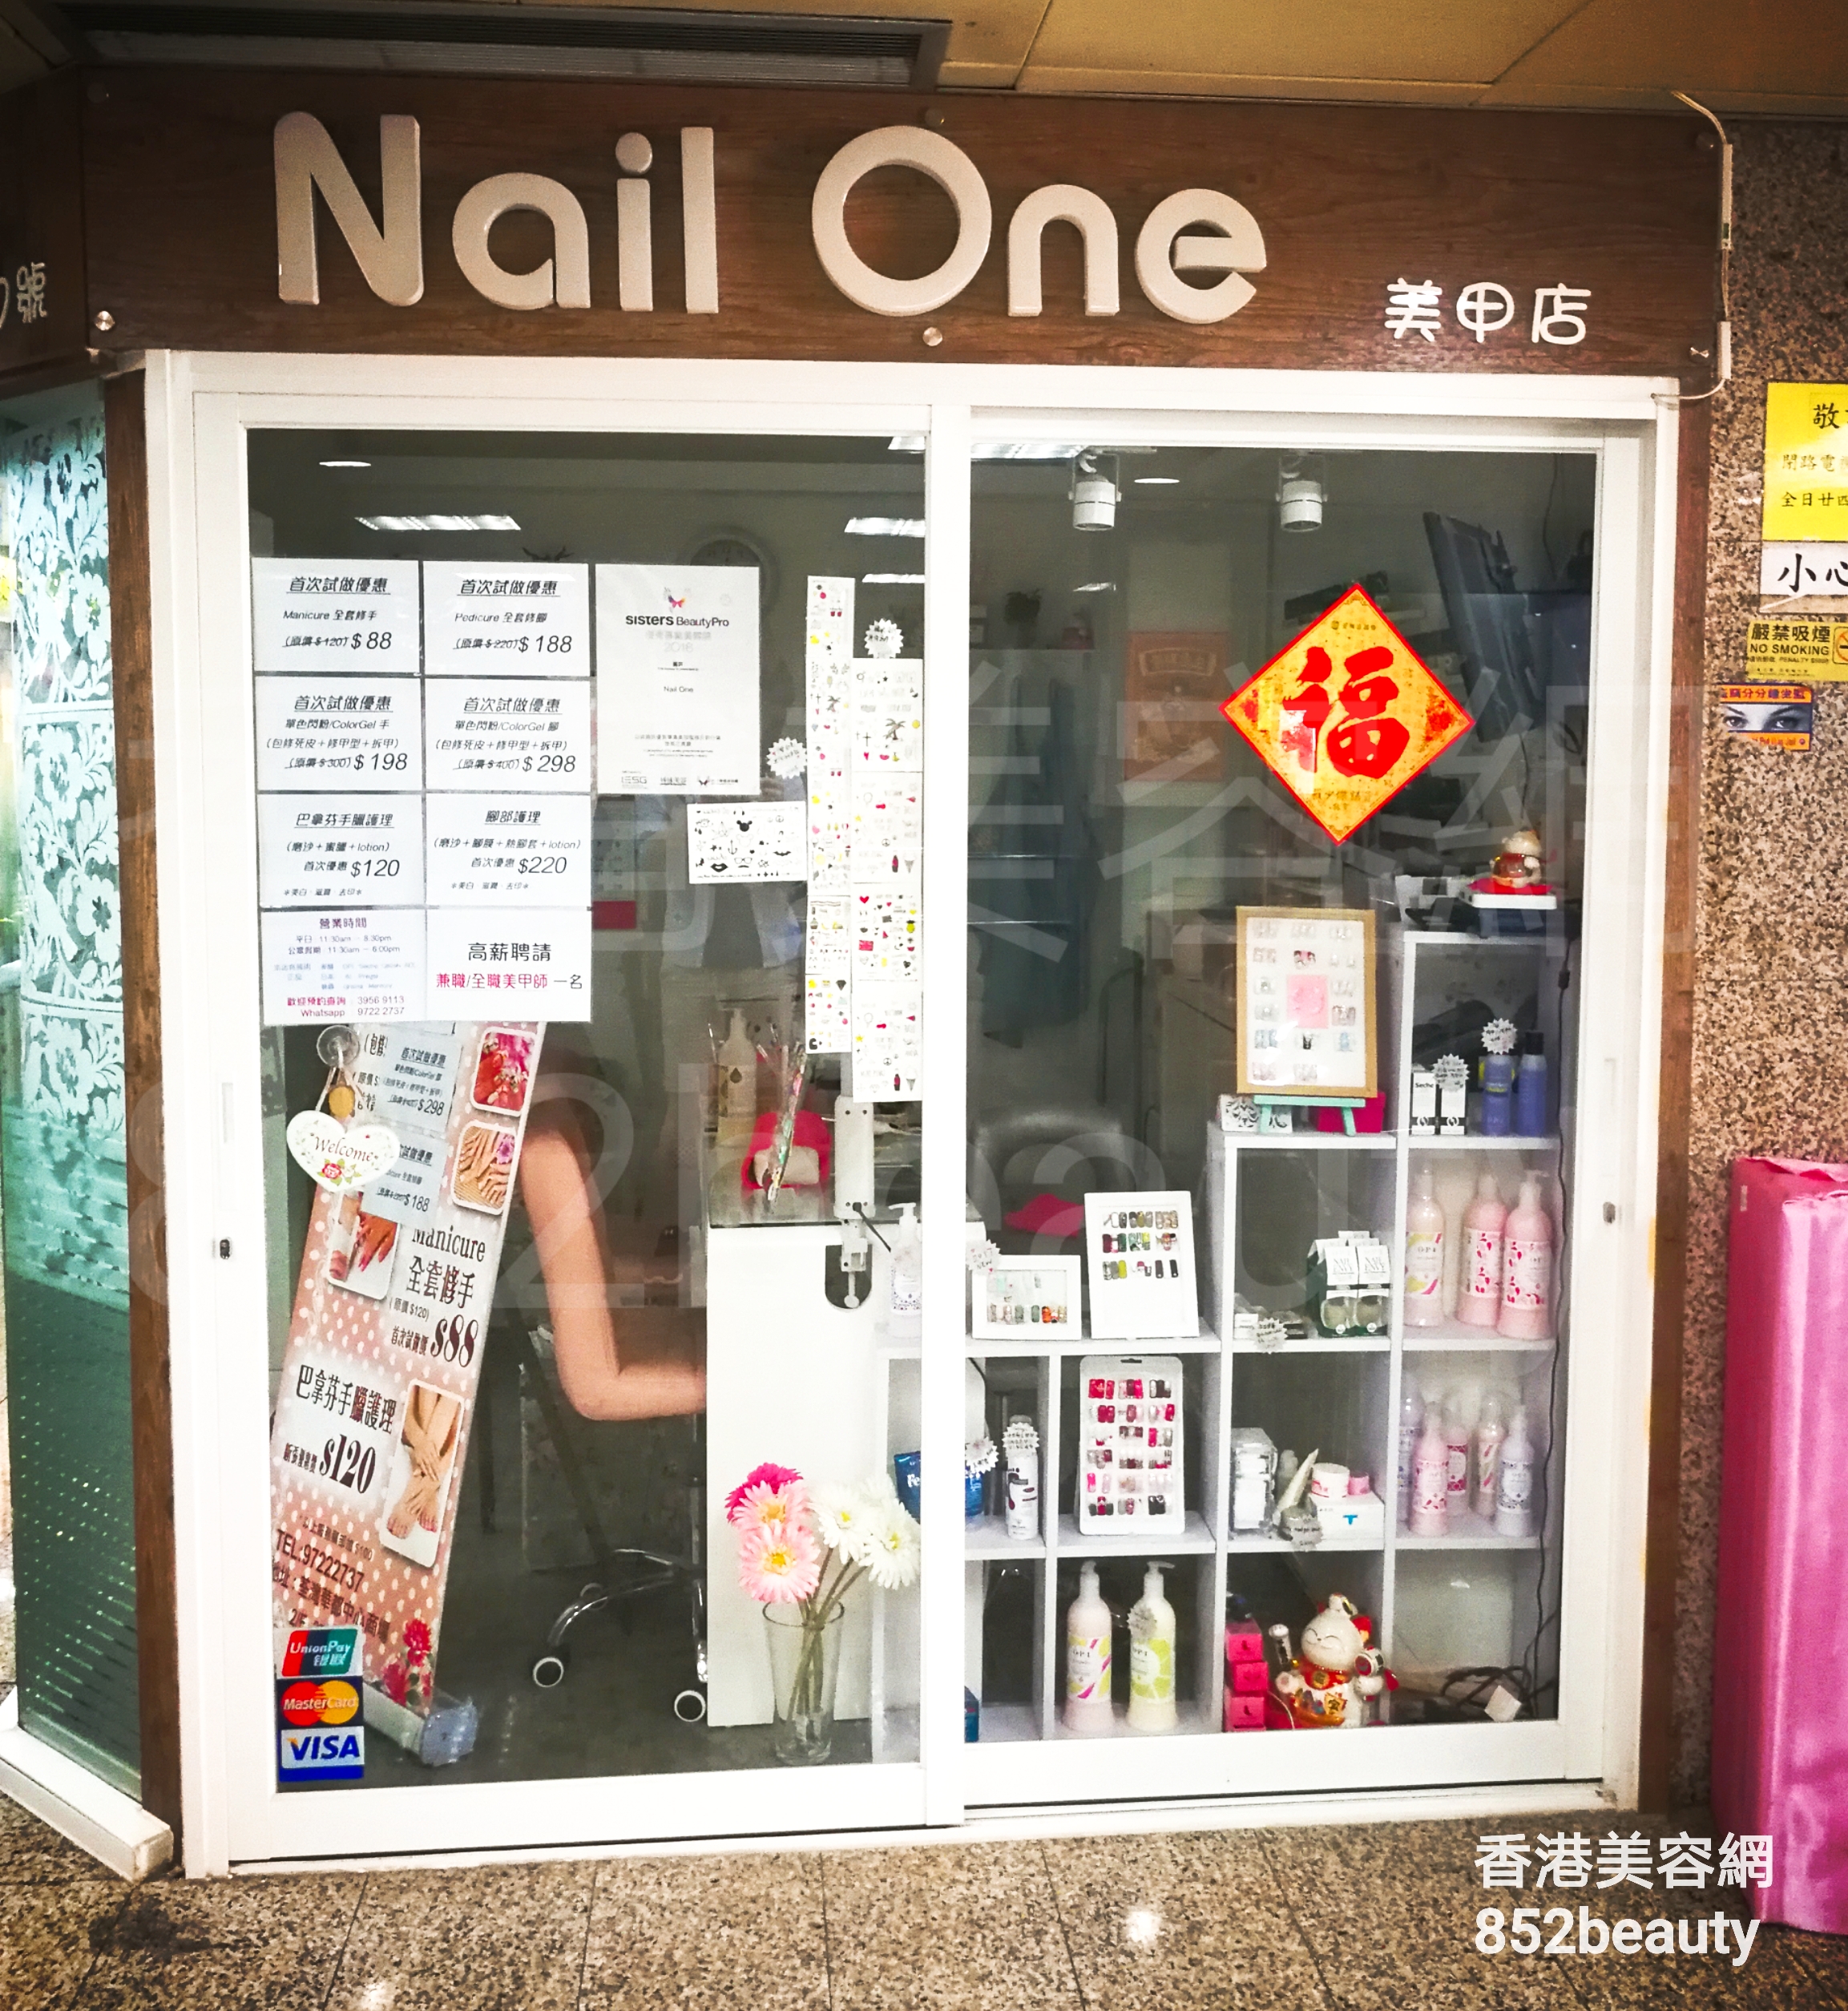 美容院 / 美容師: Nail One 美甲店